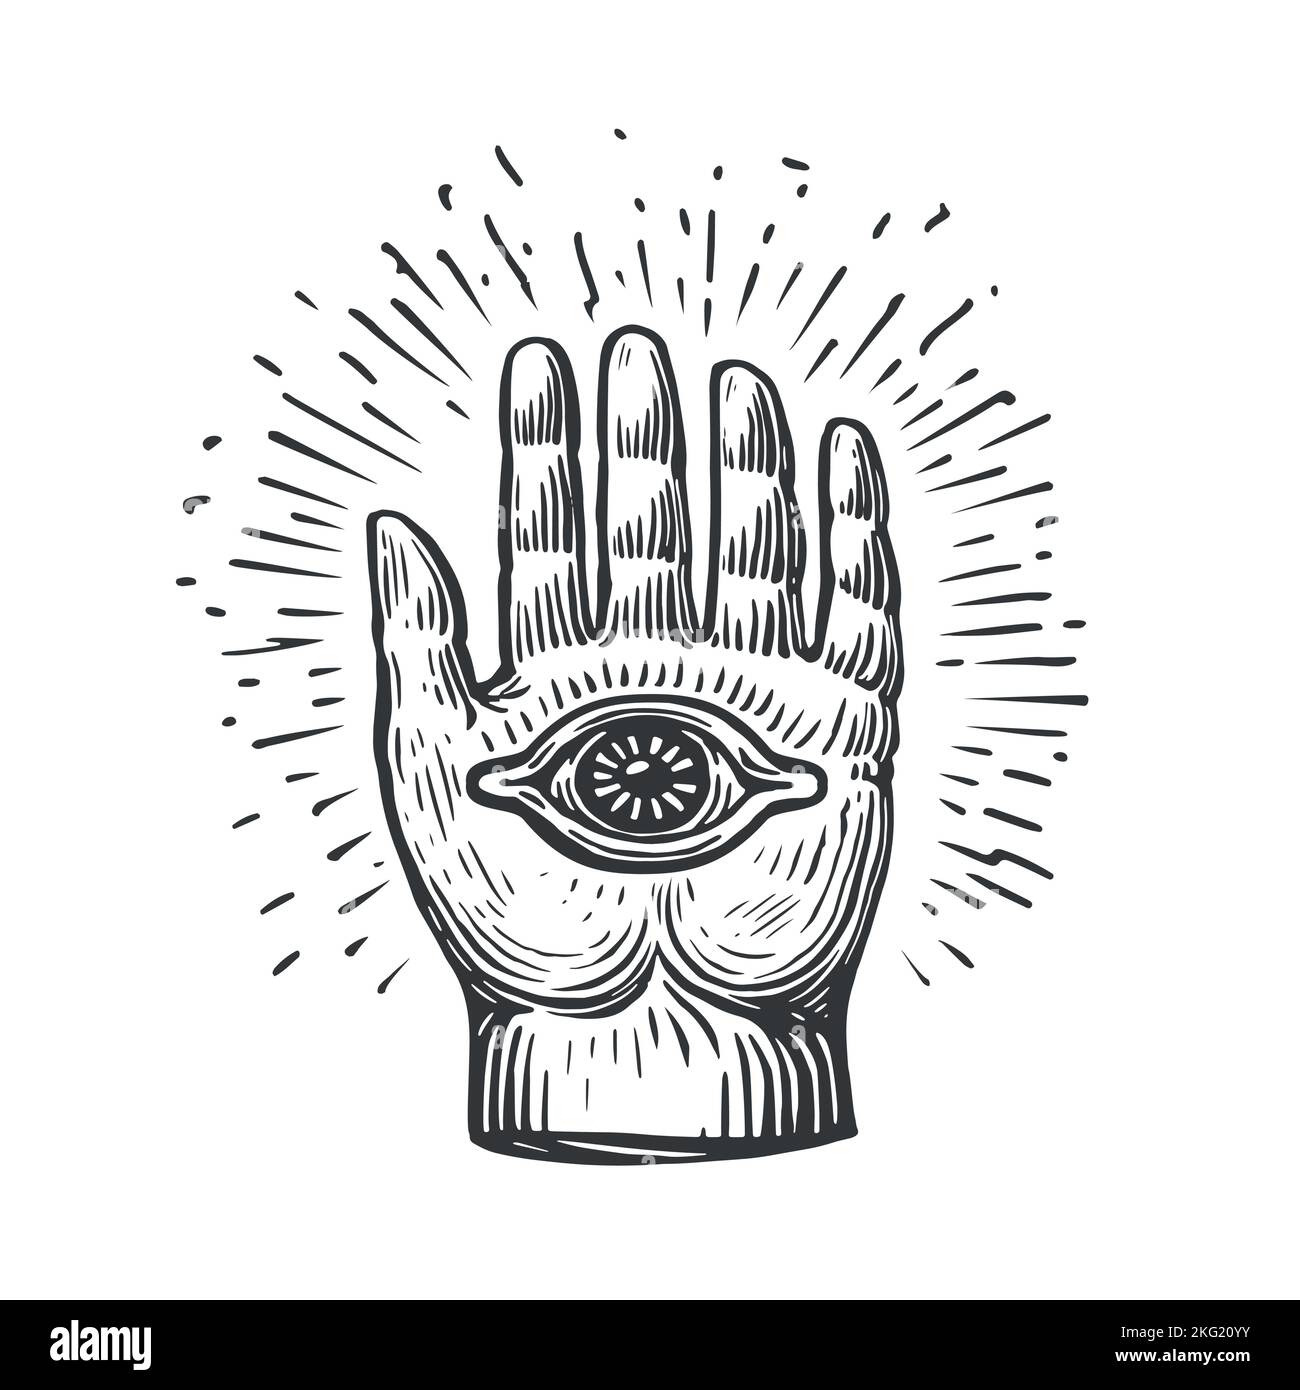 HAMSA o mano di Fatima segno. Amuleto, simbolo di protezione dall'occhio del diavolo. Illustrazione vettoriale di schizzo vintage disegnata a mano Illustrazione Vettoriale